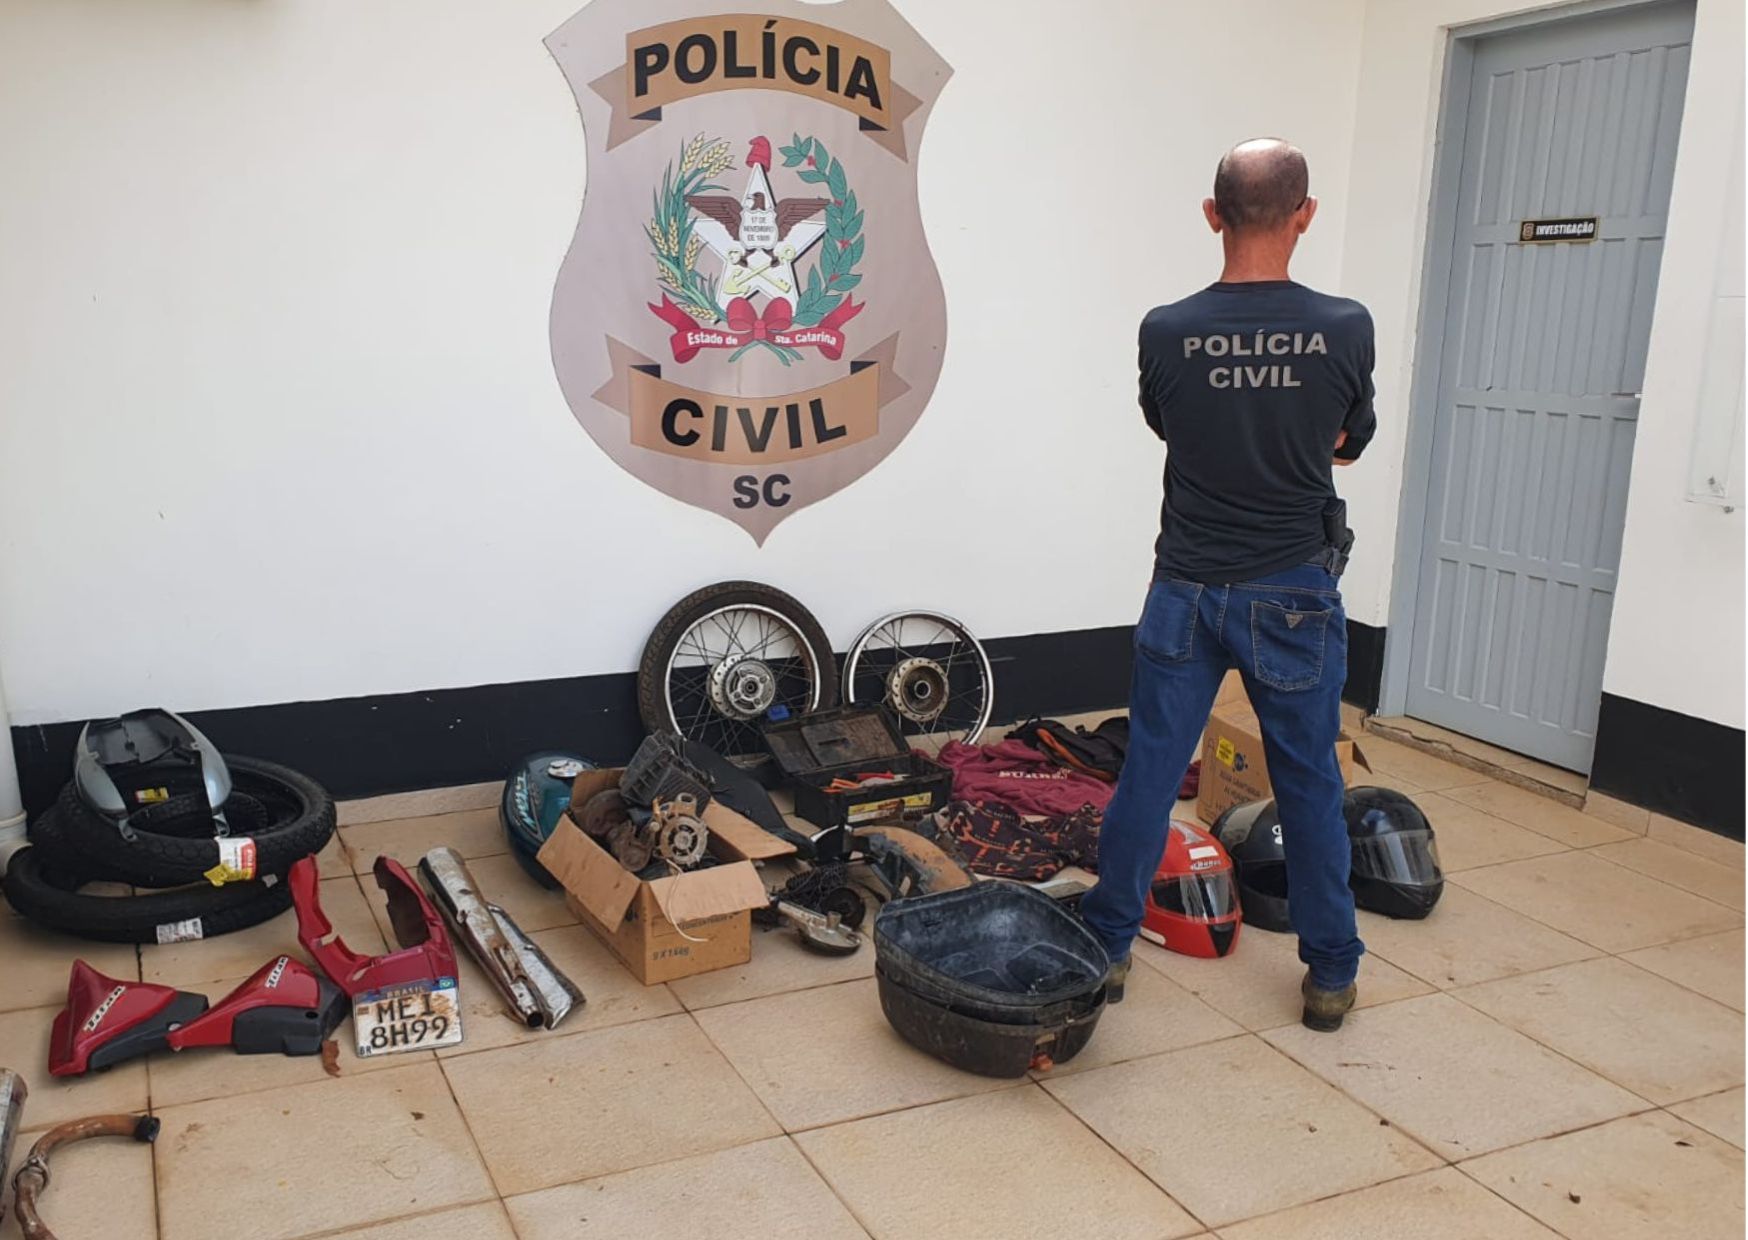 um policial civil em frente a uma parede com a insígnia da policia civil e no chão rodas, capacetes e outras partes de um veículo